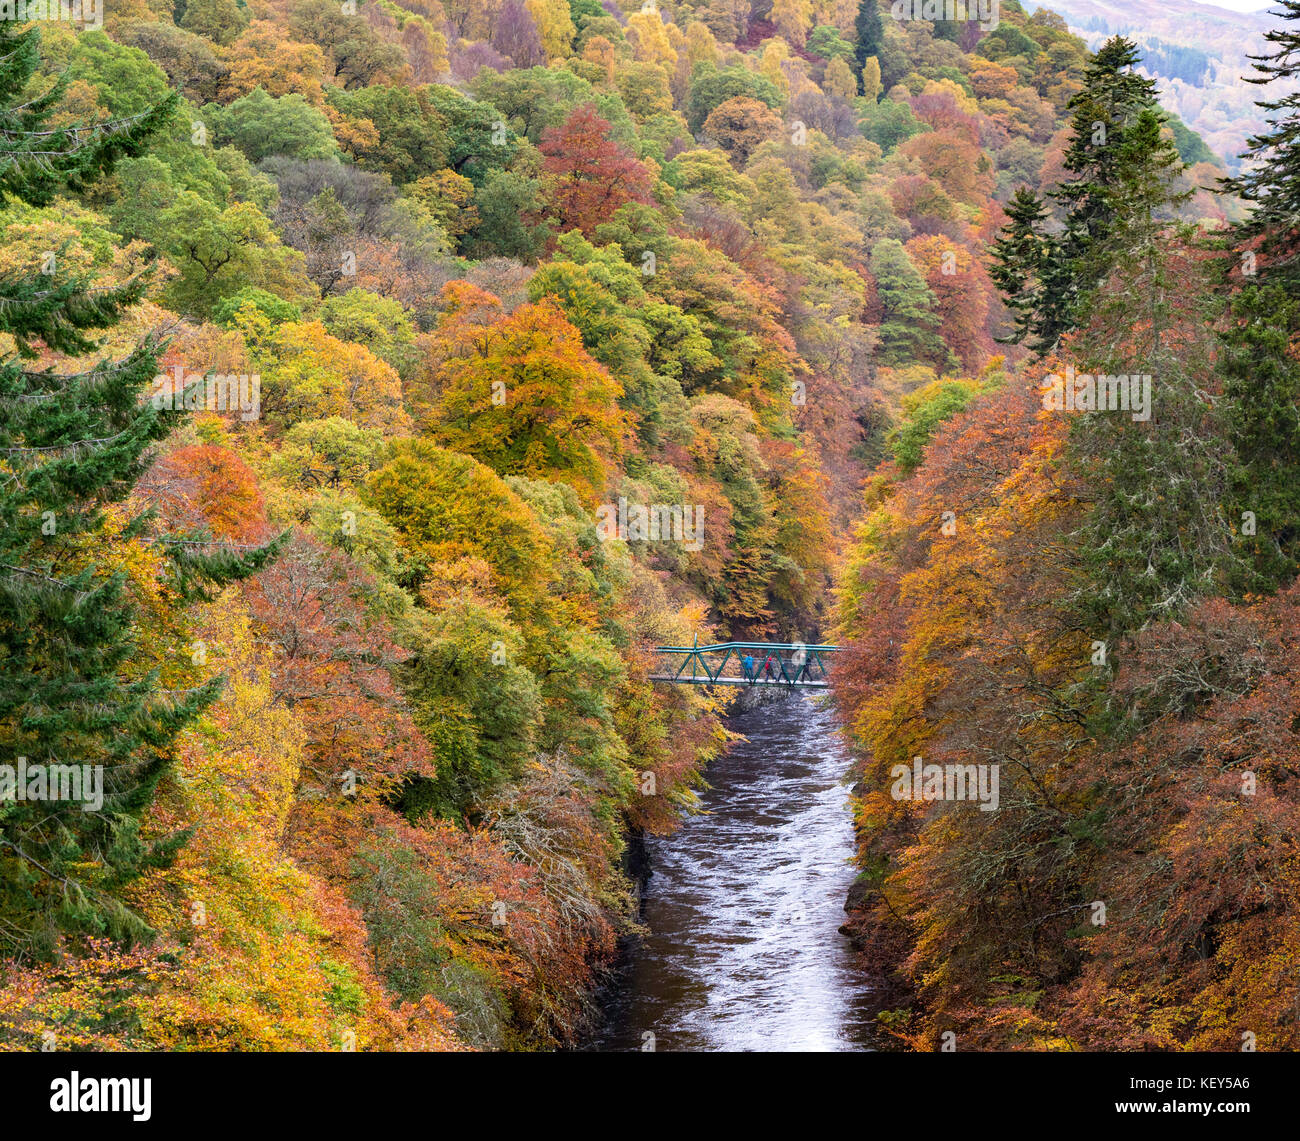 Spektakuläre Herbstfarben in natürlichen Wäldern am Ufer des Flusses Garry am historischen Pass von Killiecrankie in der Nähe von Pitlochry. Stockfoto